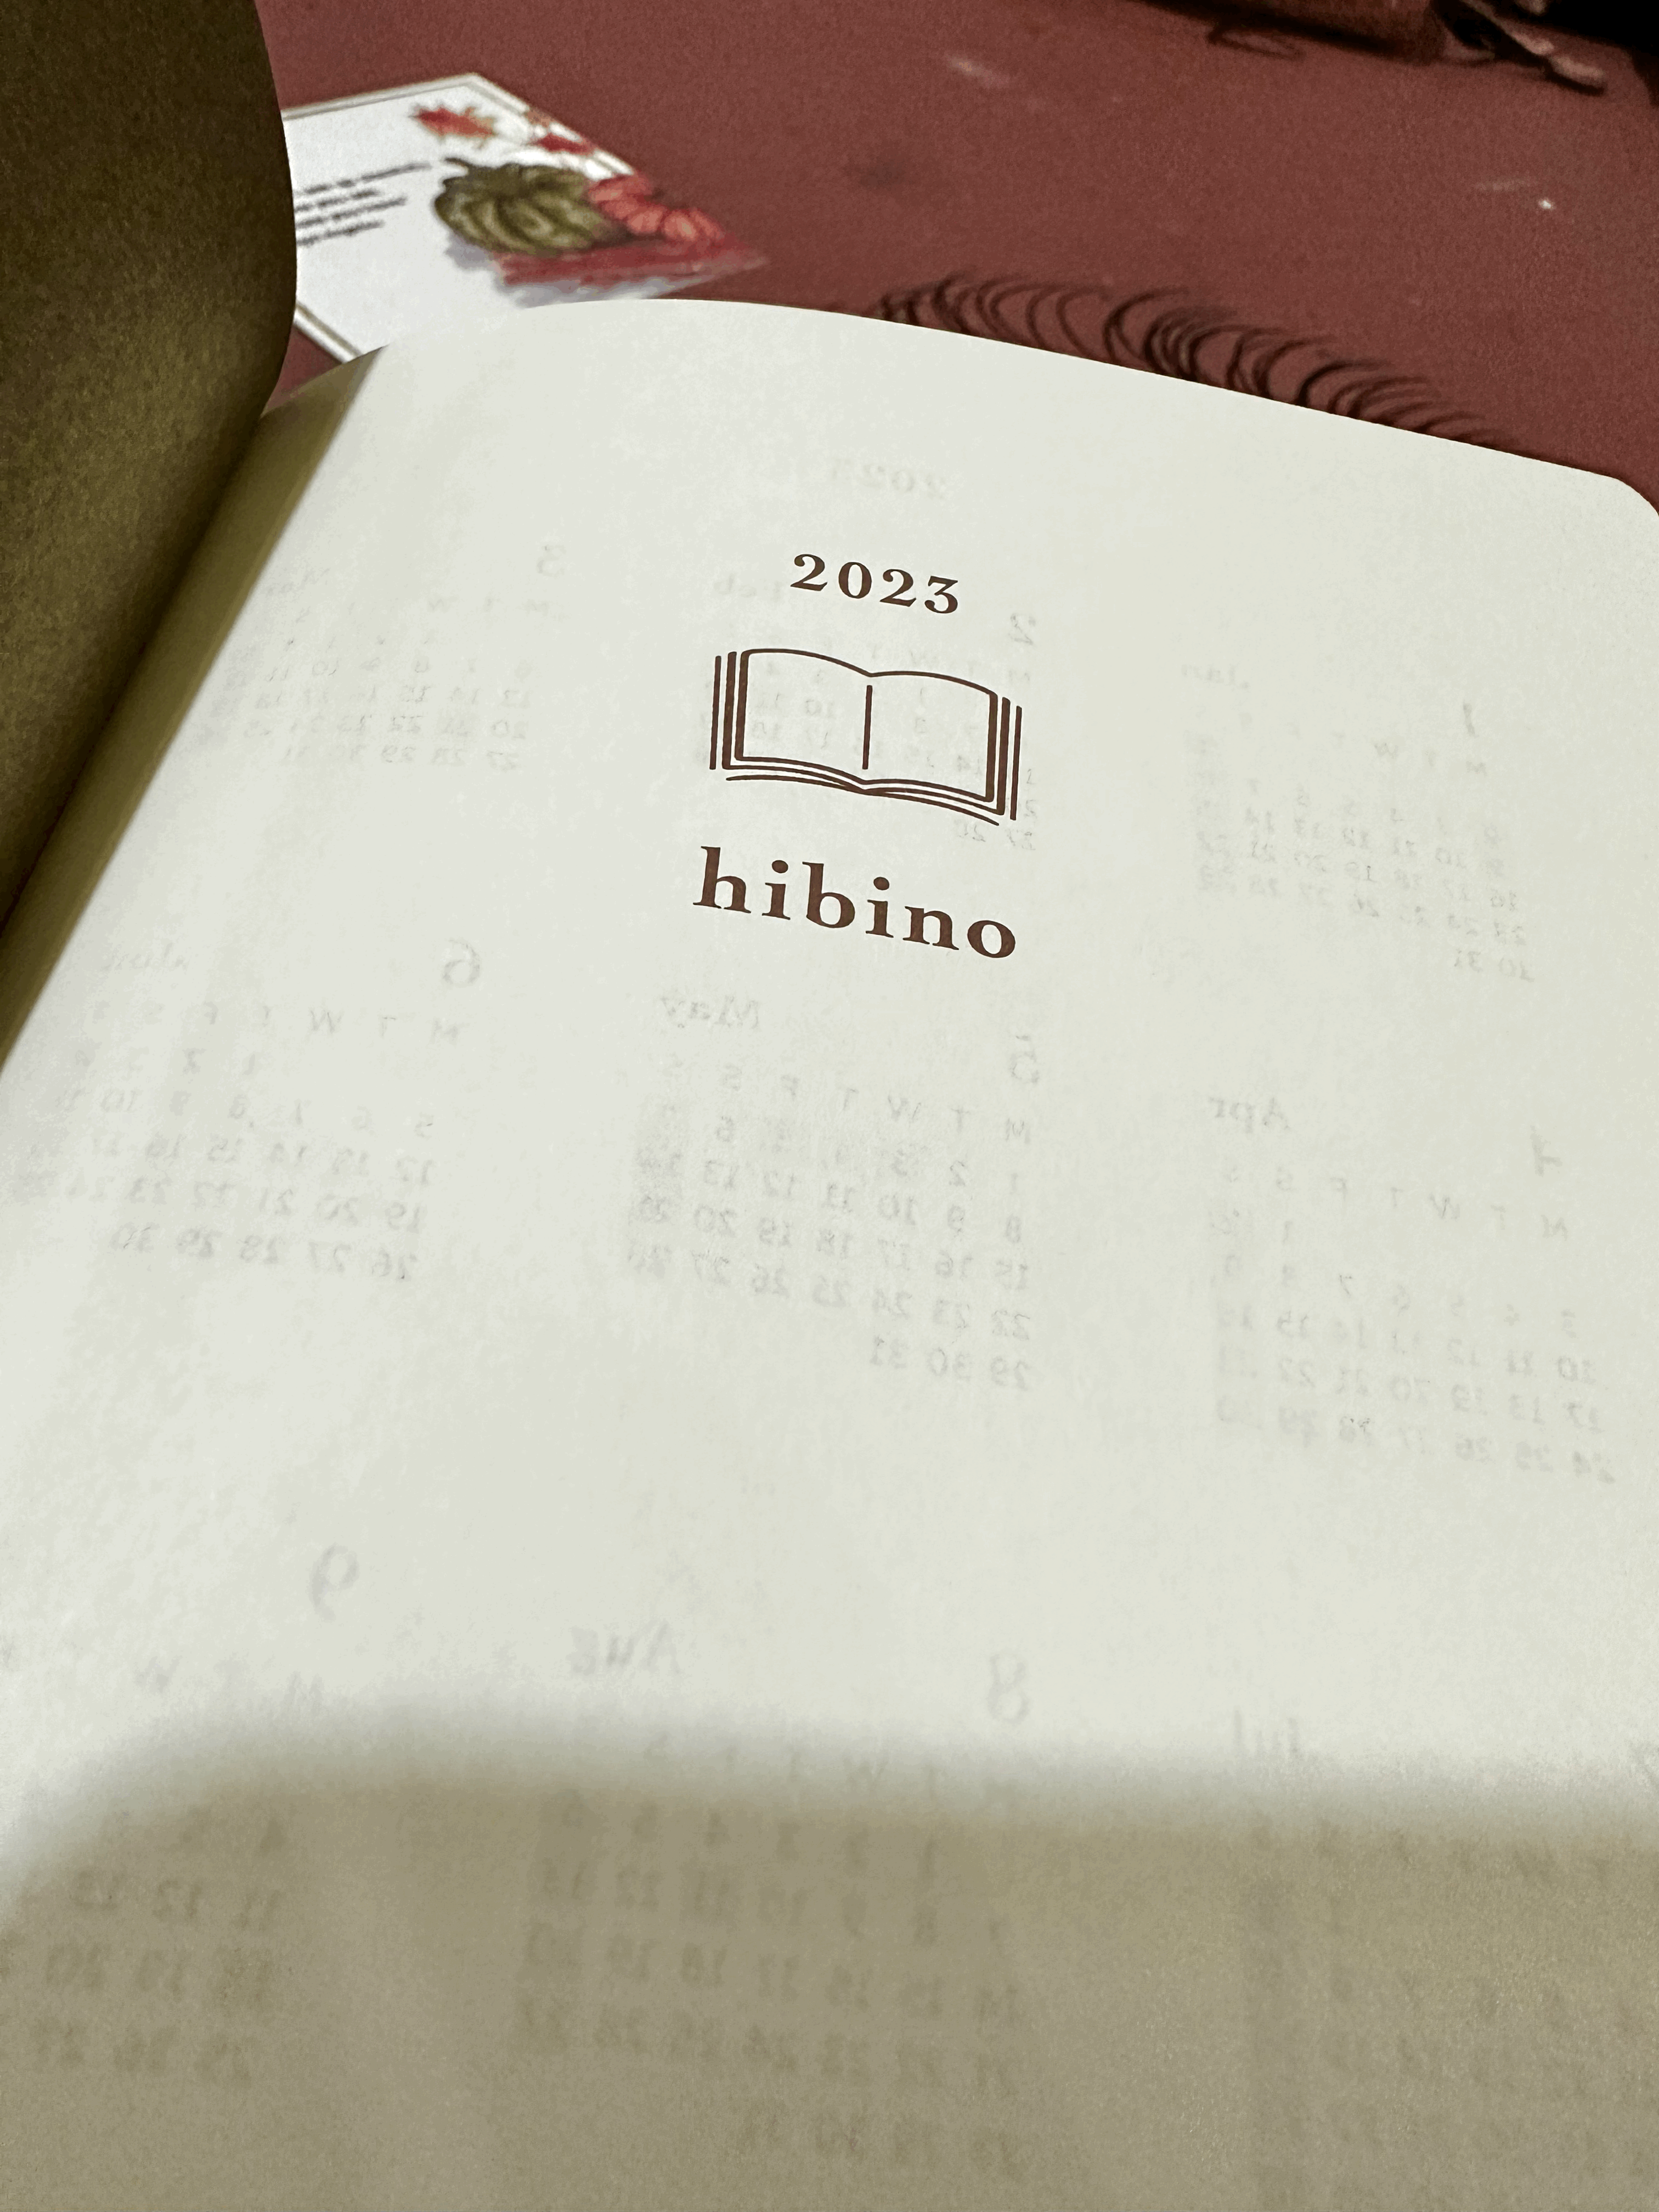 Midori Hibino 2023 - A Review